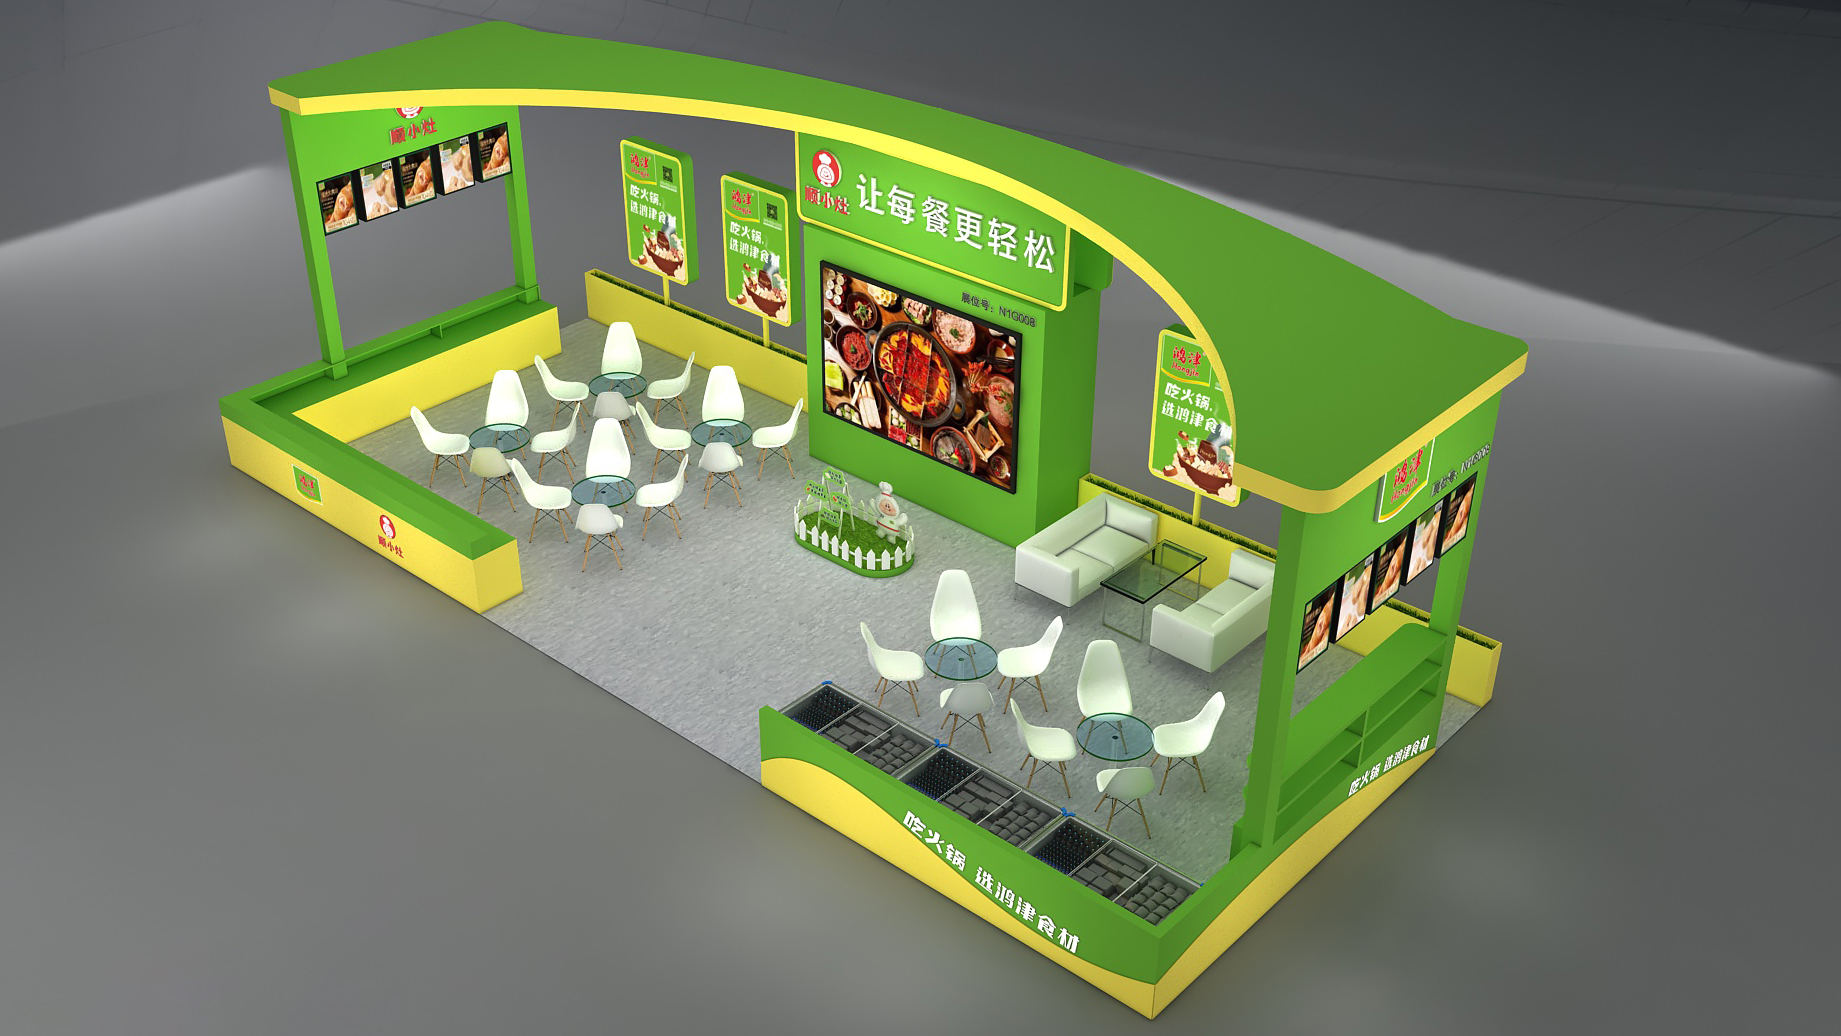 【特装欣赏合集二】 第14届歌华食材展将于8月23-25日亮相上海新国际博览中心